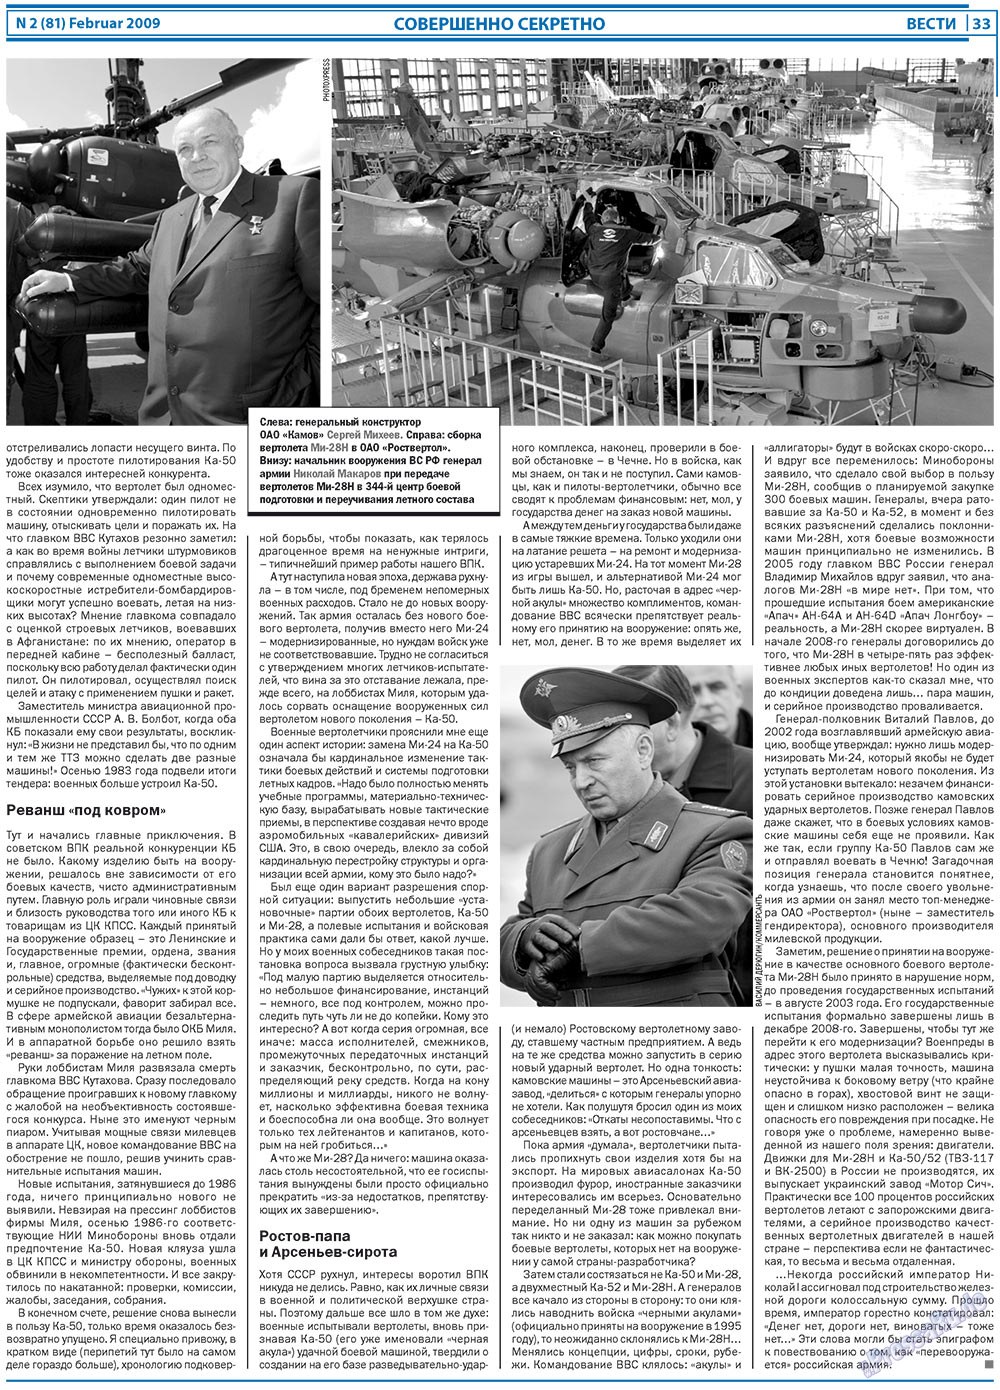 Вести, газета. 2009 №2 стр.33